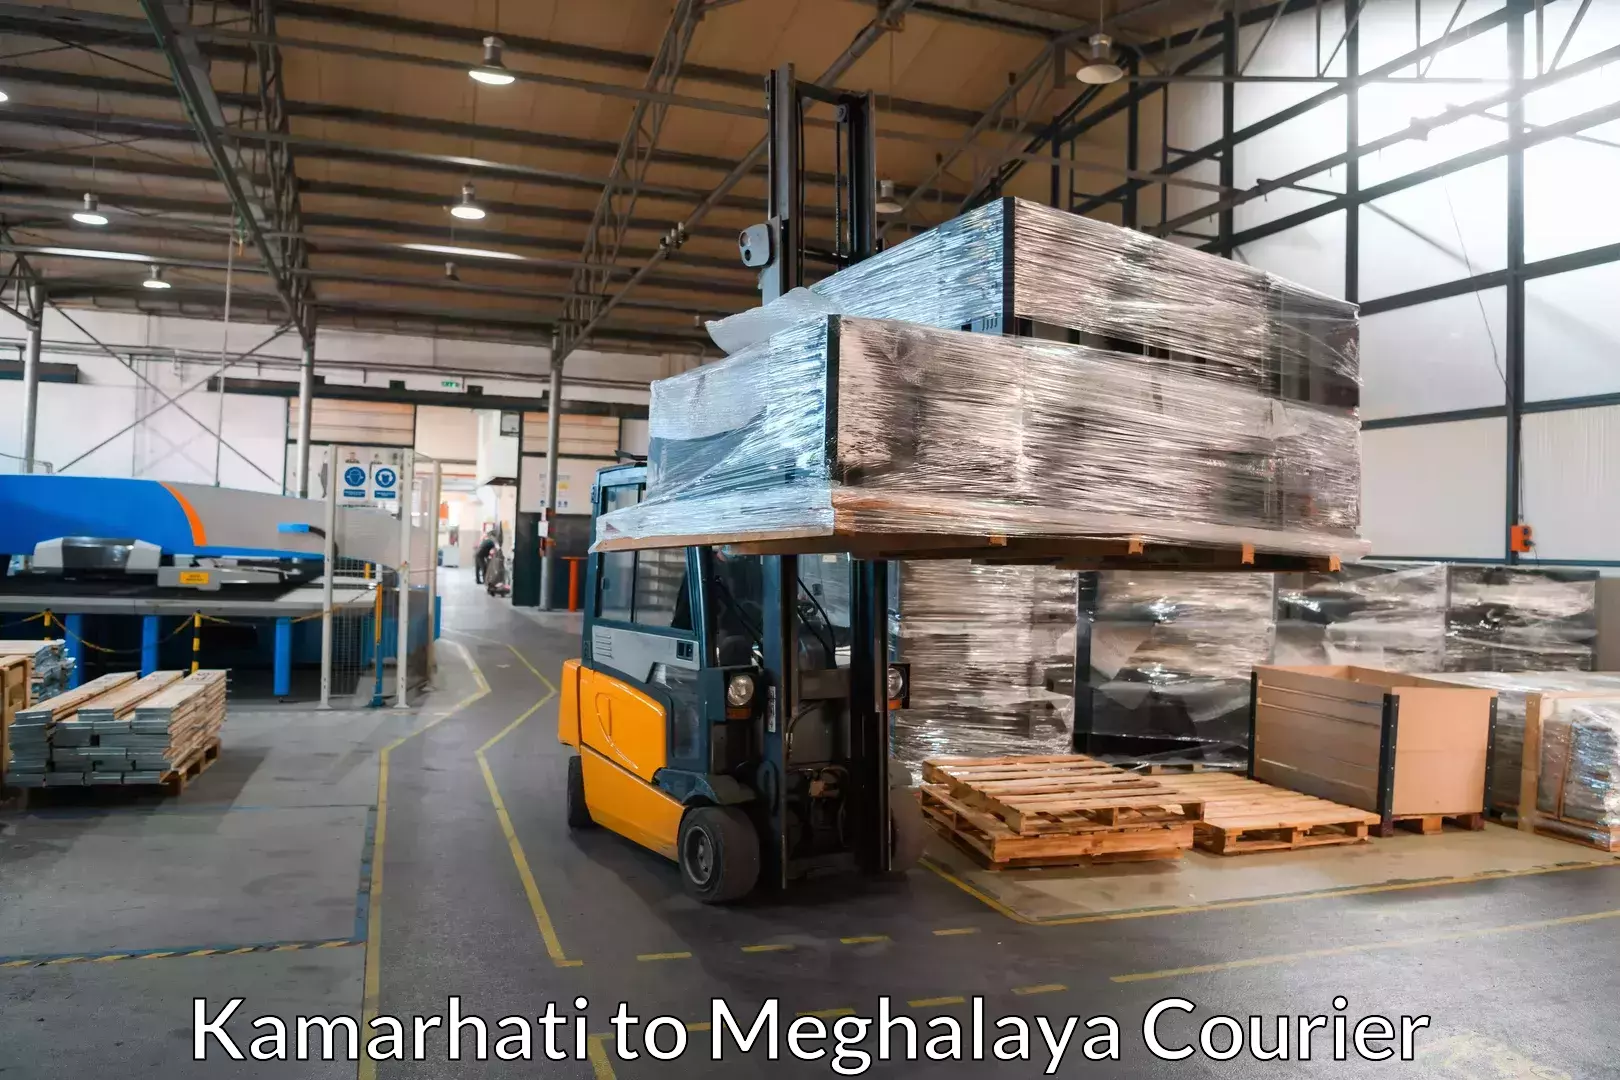 Furniture transport experts Kamarhati to Rongjeng